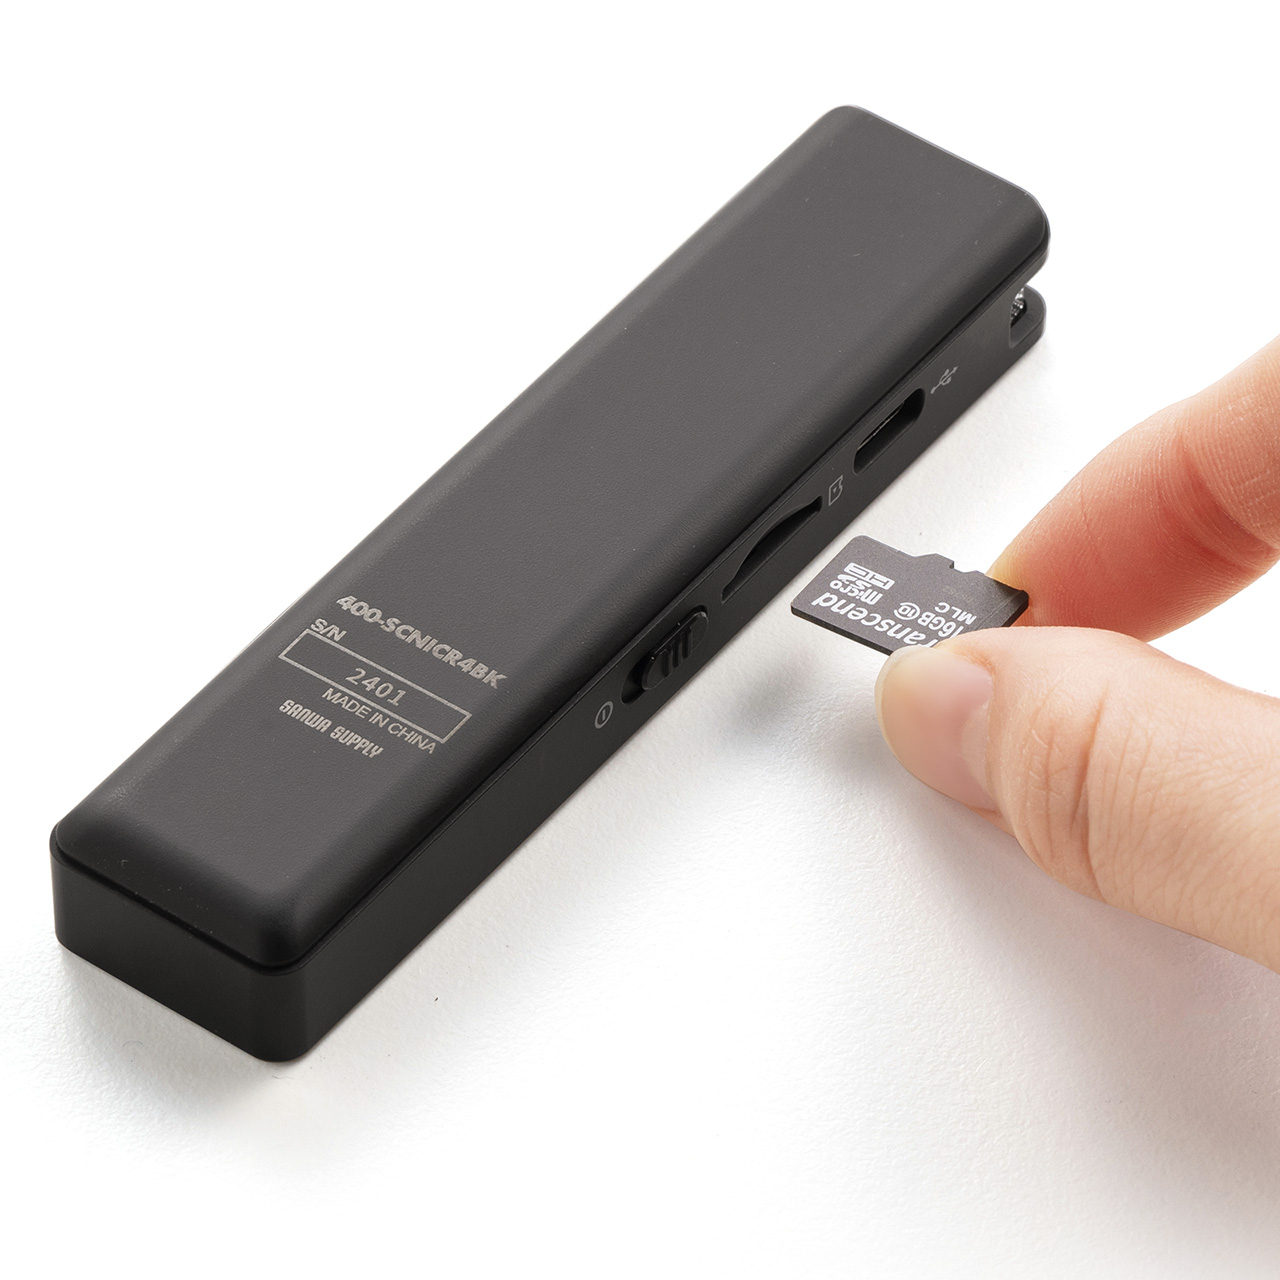 ボイスレコーダー 8GBメモリ内蔵 microSDカード対応 ICレコーダー 小型 